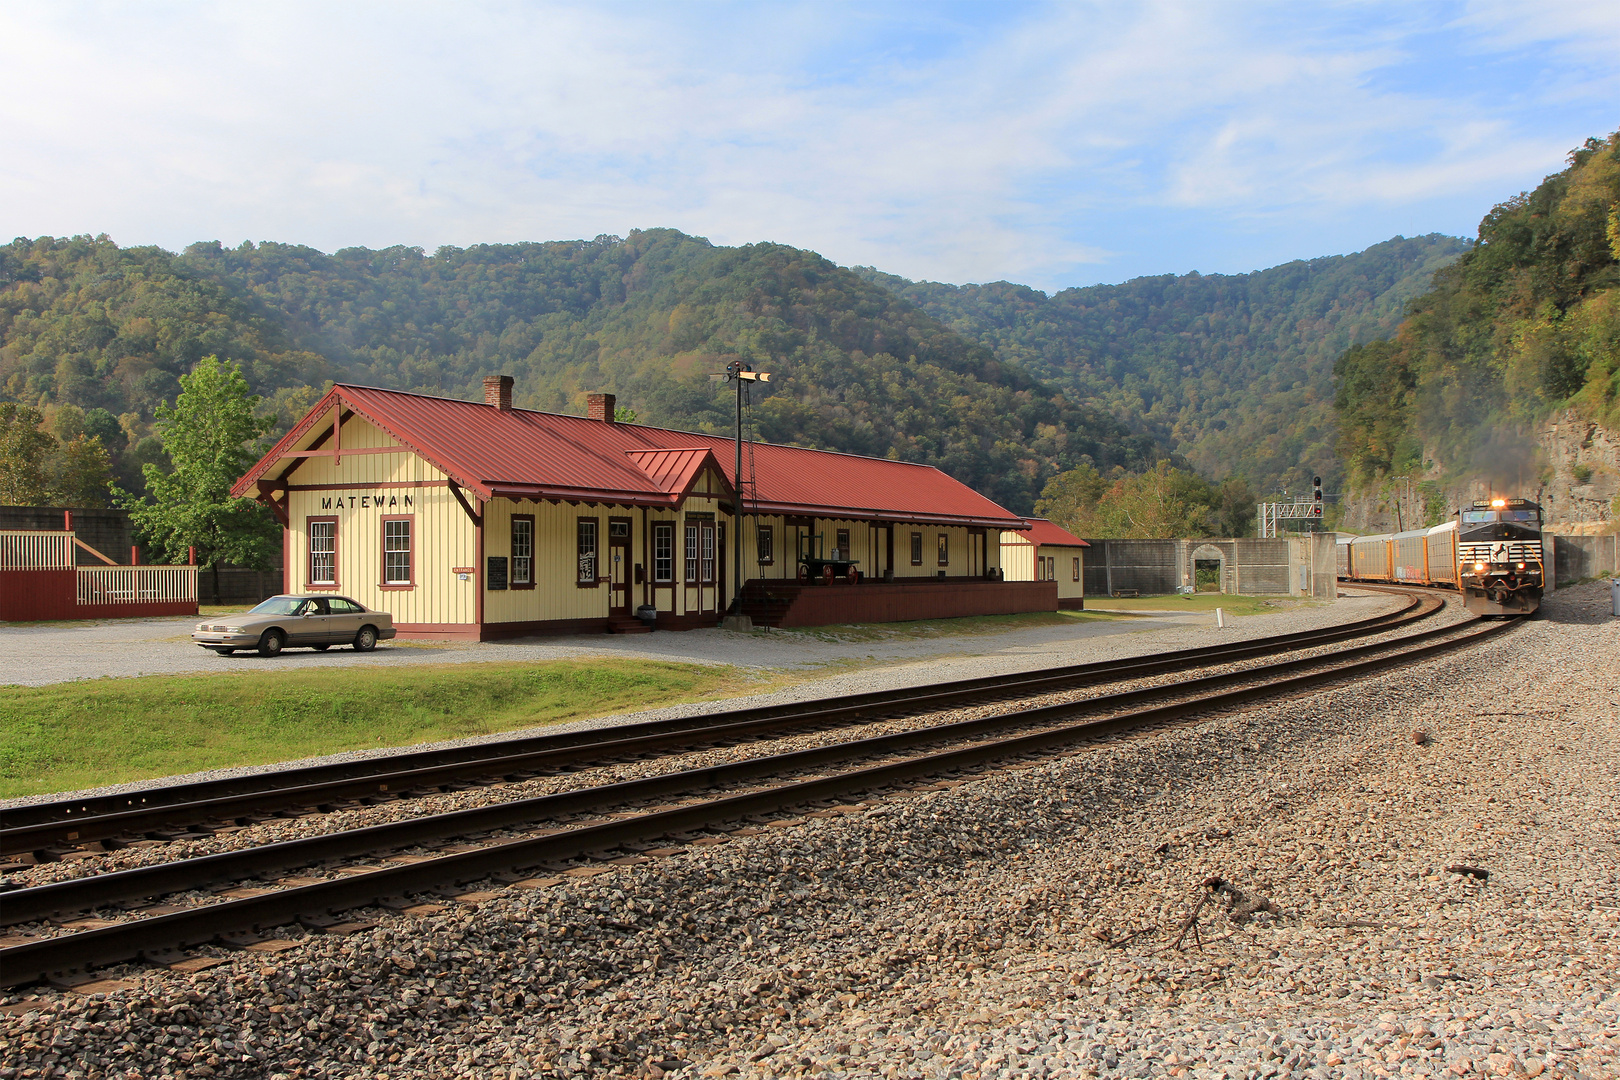 Blickfang: aus Holz gebauter Bahnhof von MATEWAN, West Virginia, USA